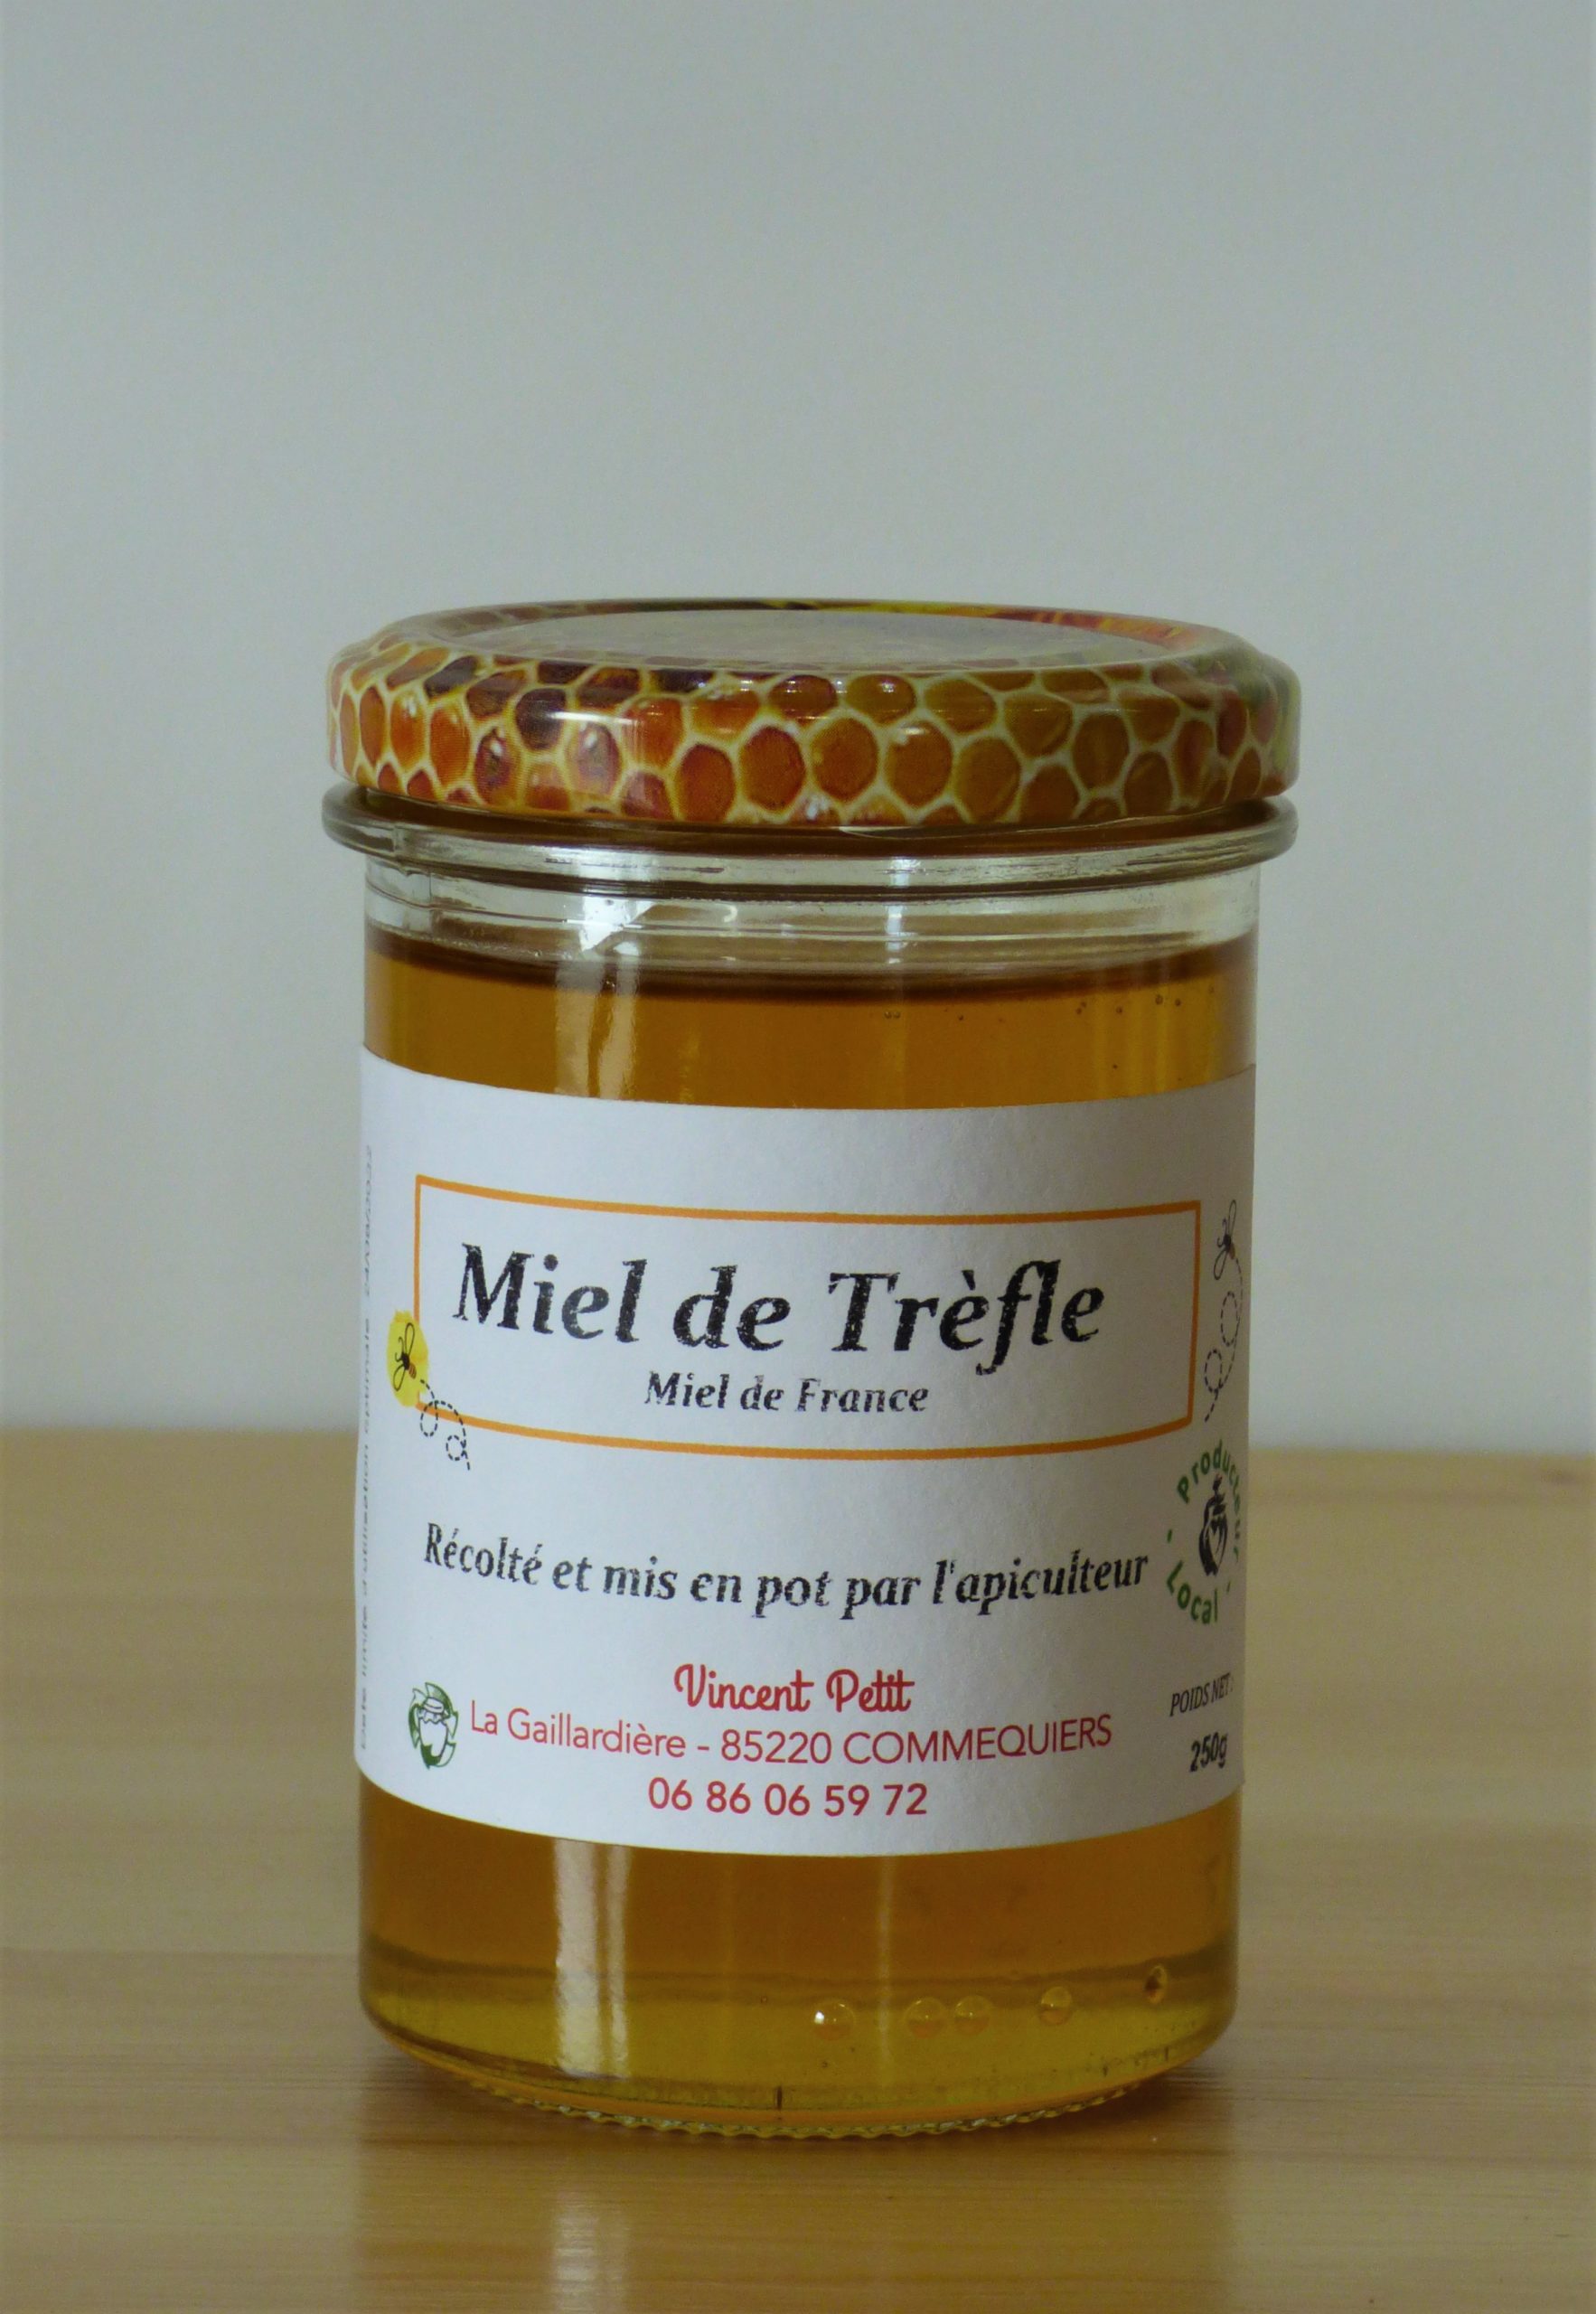 Miel cru - Trèfle 1kg - L'Autre Choix Mini Marché